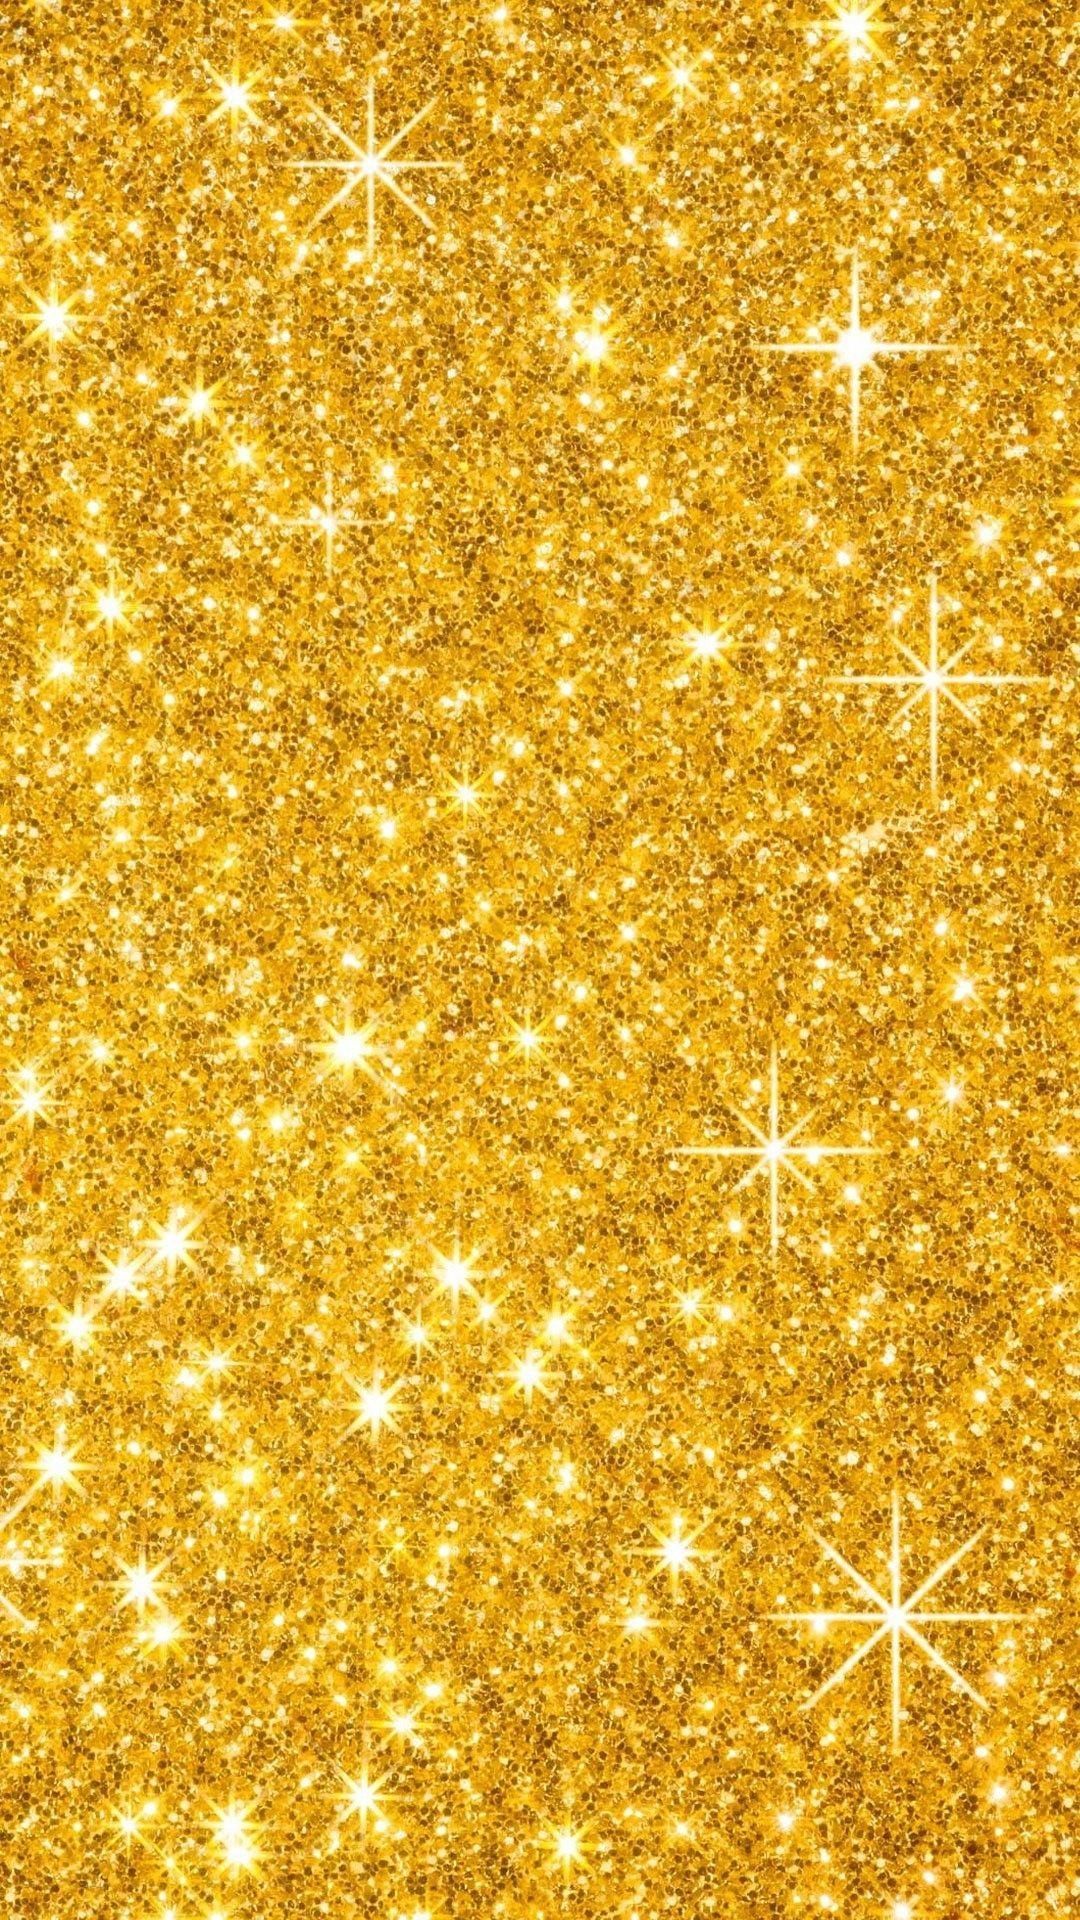 Gold sparkles on black background golden glitter Gold sparkles on black  background gold glitter background gold  CanStock